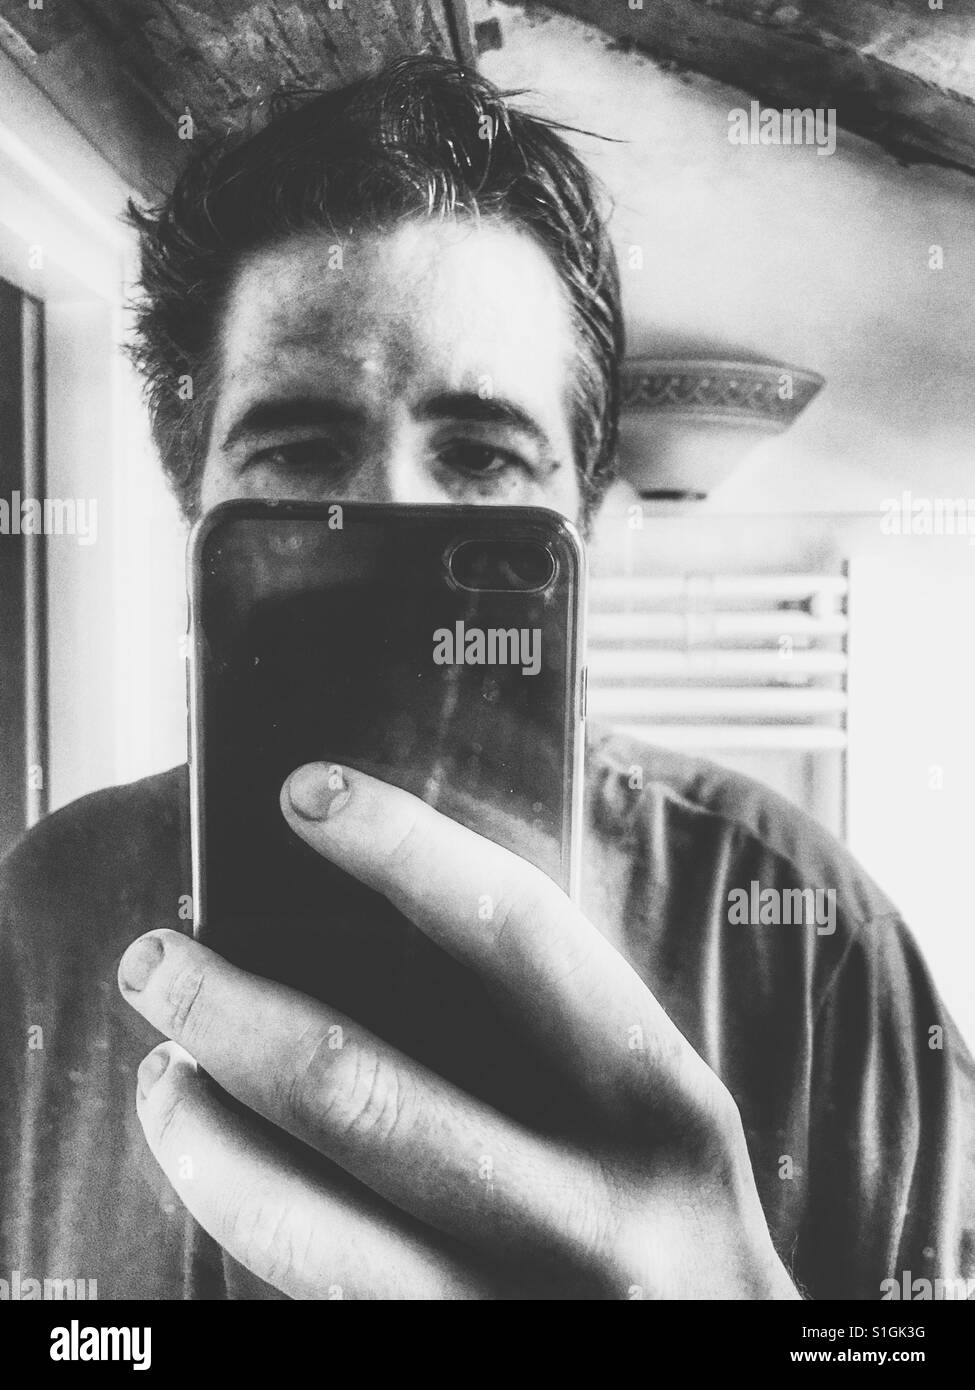 Homme miroir selfie Banque d'images noir et blanc - Alamy